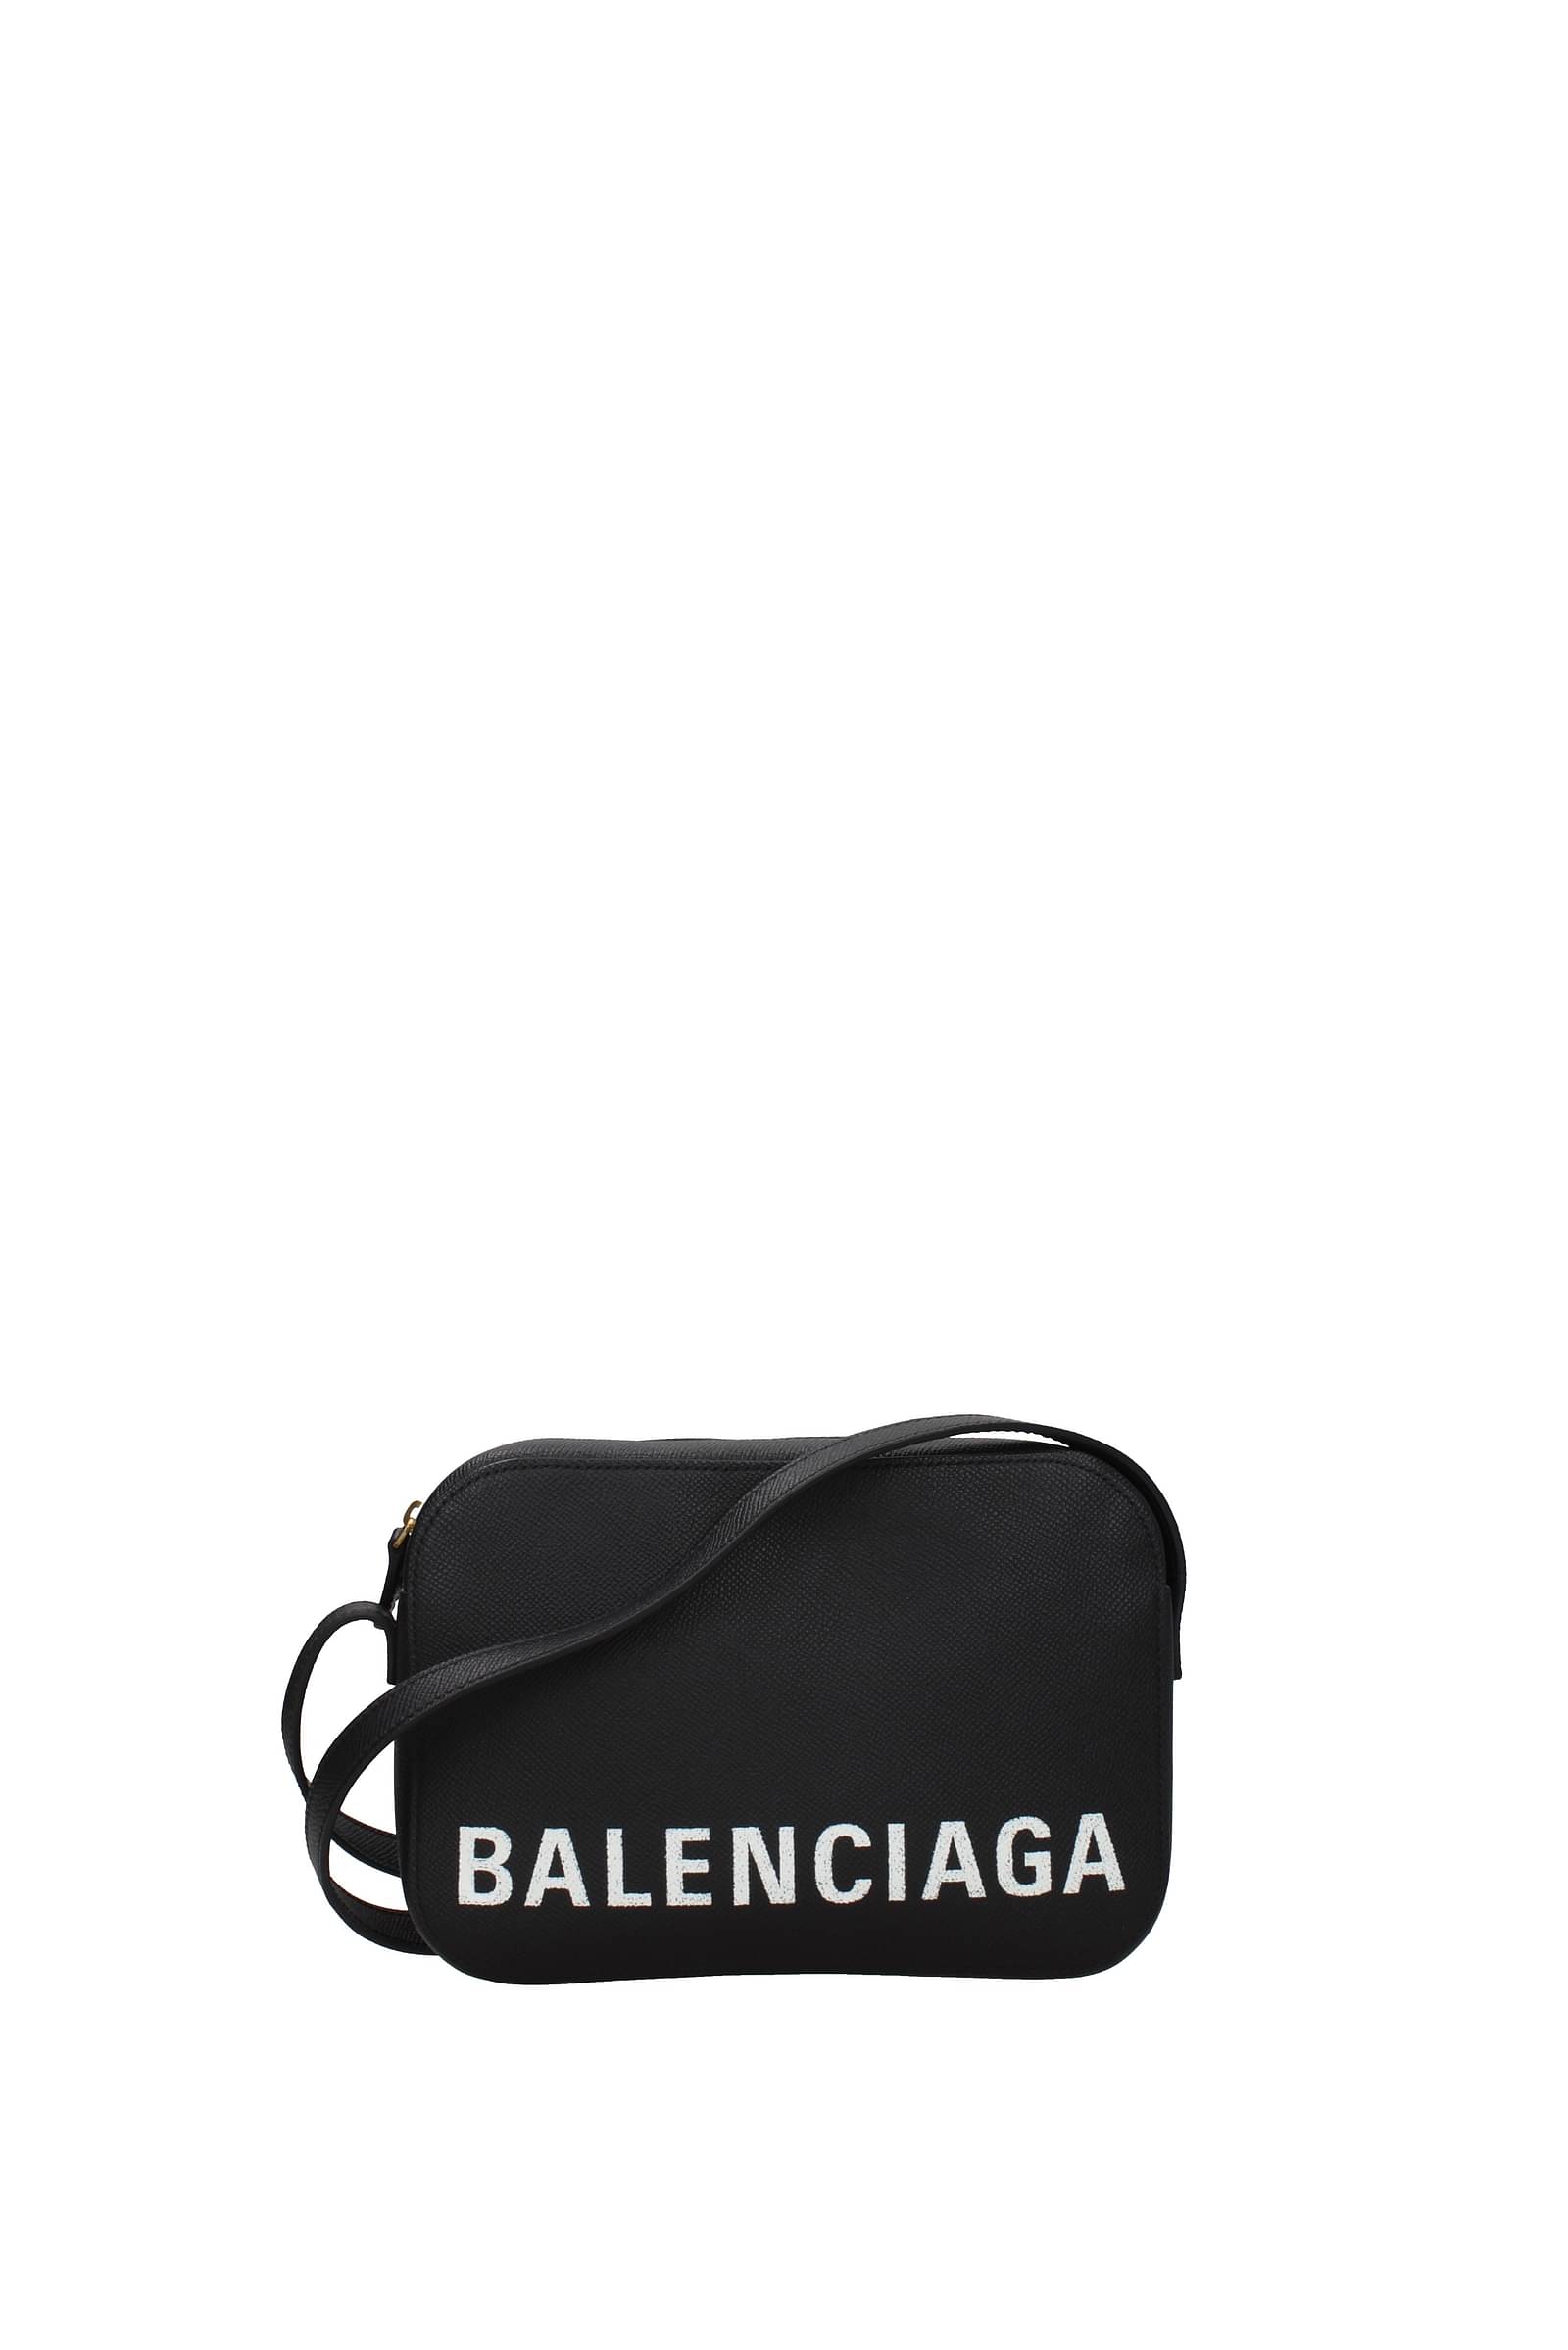 Balenciaga Crossbody Bag Women 537387DLQ4N9060 Leather White Off White 570